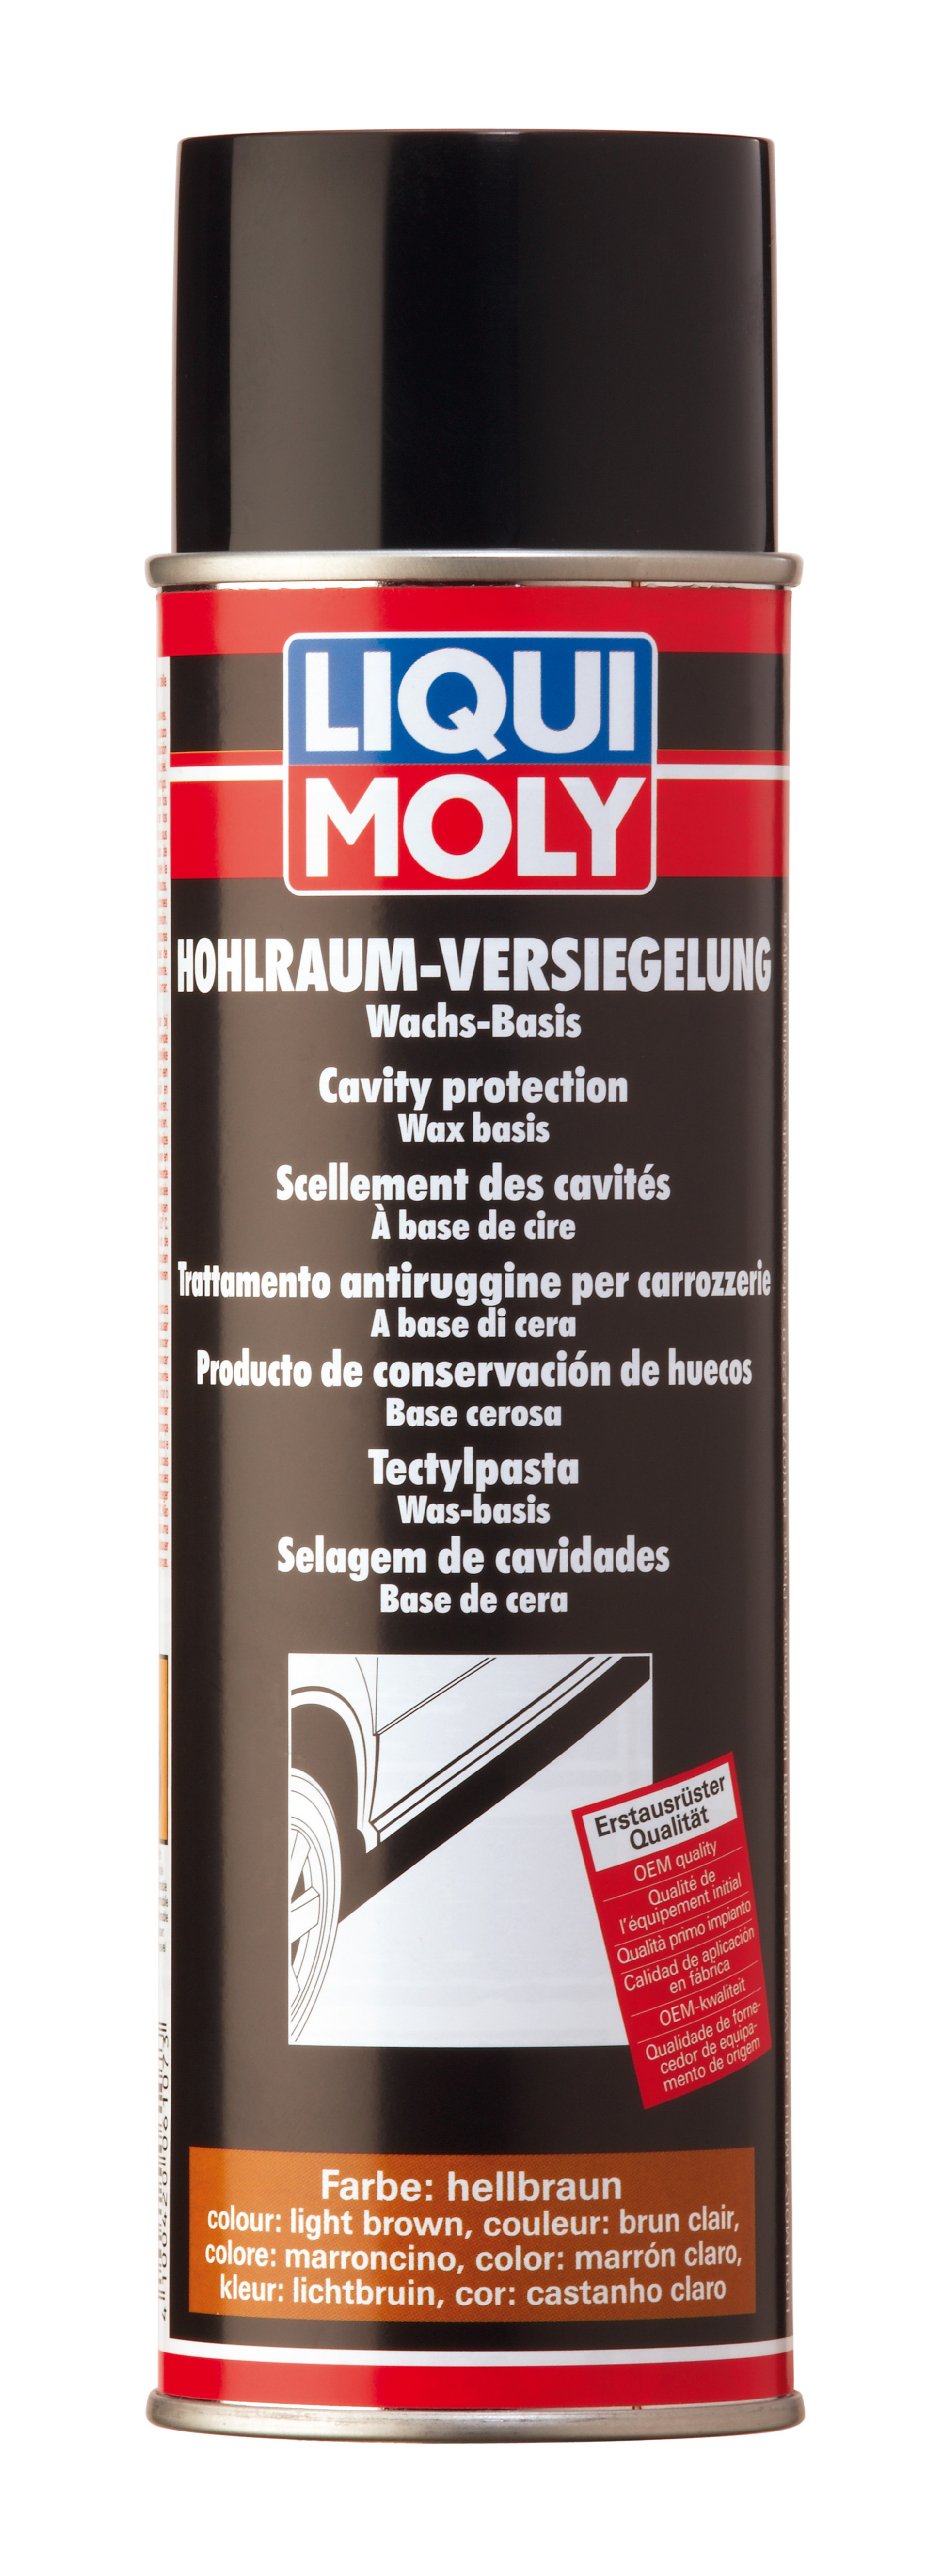 LIQUI MOLY Hohlraumversiegelung hellbraun | 500 ml | Karosserieschutz | Unterbodenschutz | Hohlraumversiegelung | Art.-Nr.: 6107 von Liqui Moly